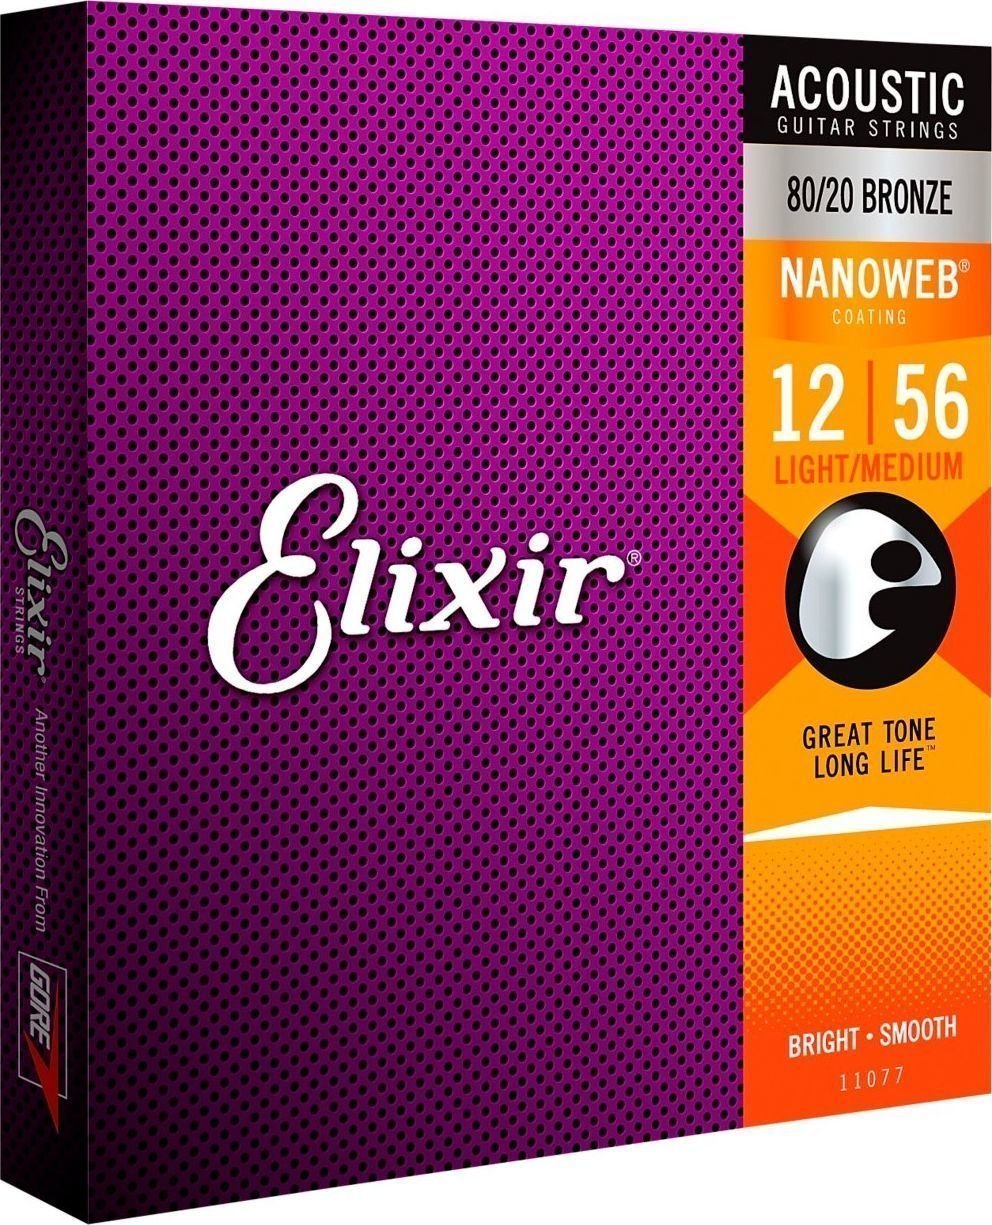 Akusztikus gitárhúrok Elixir 11077 Nanoweb 12-56